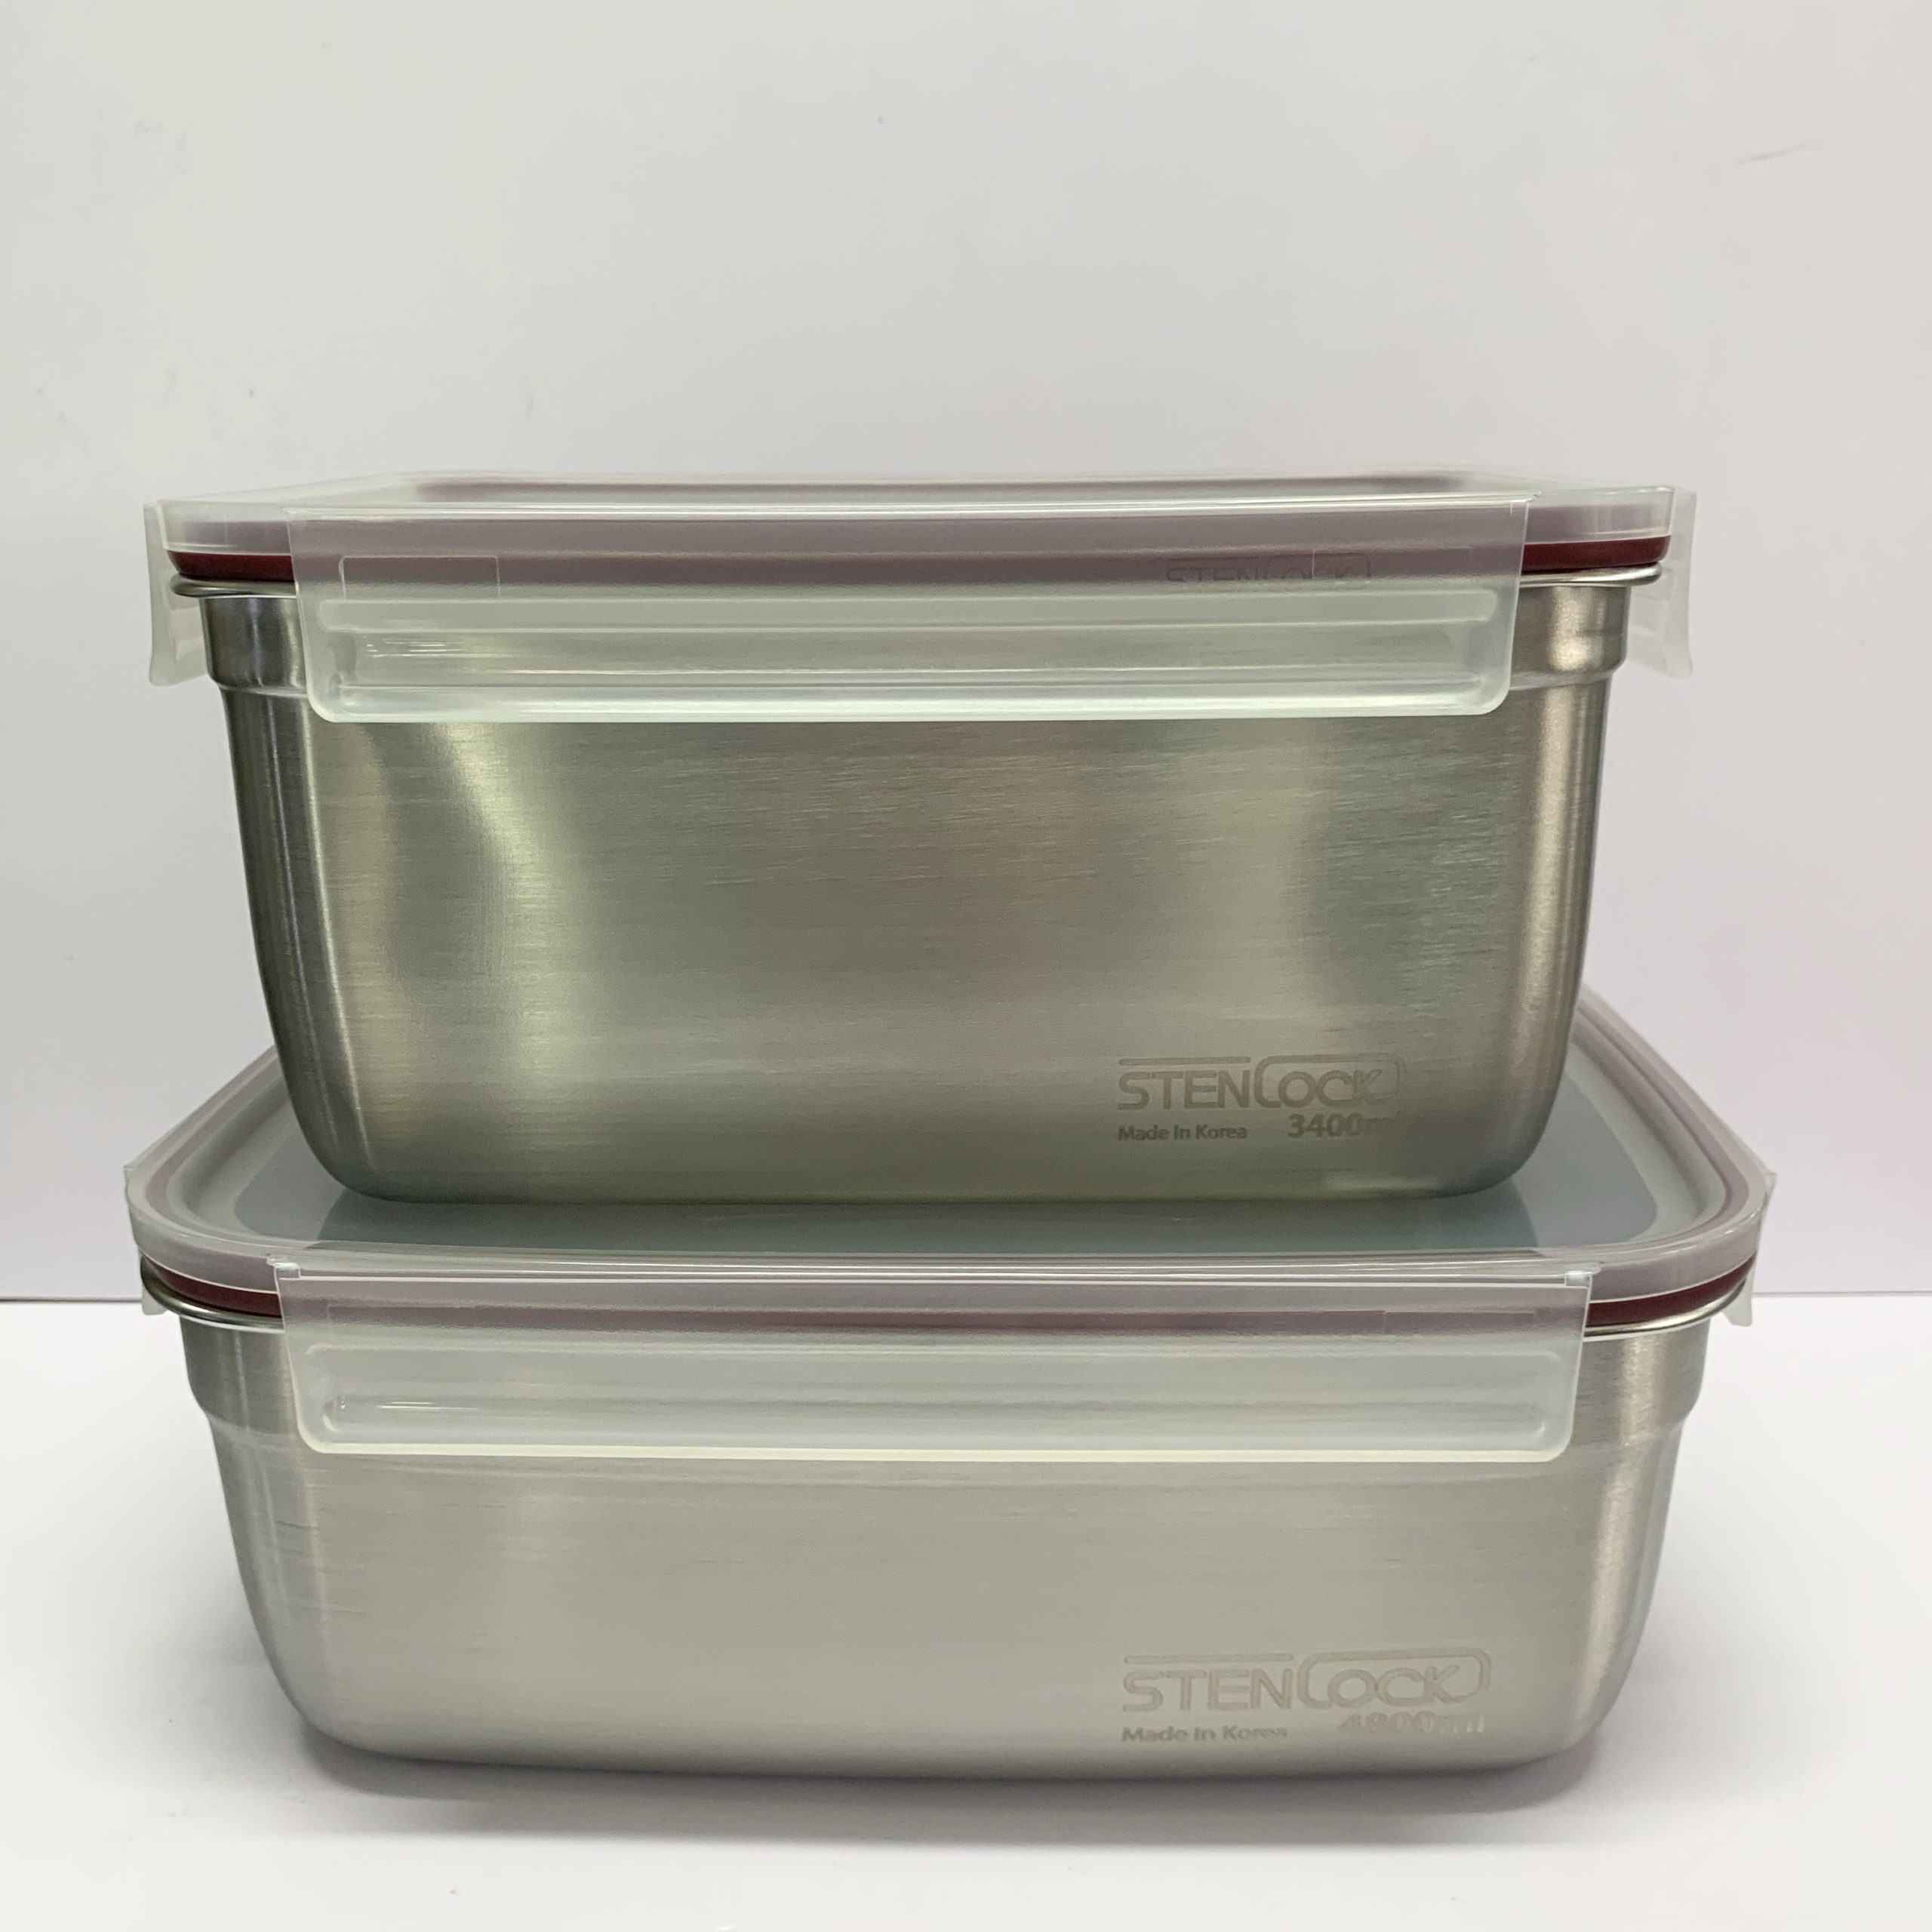 韓國食品-[Stenlock] Stainless Steel Airtight Kimchi Container 4.8L